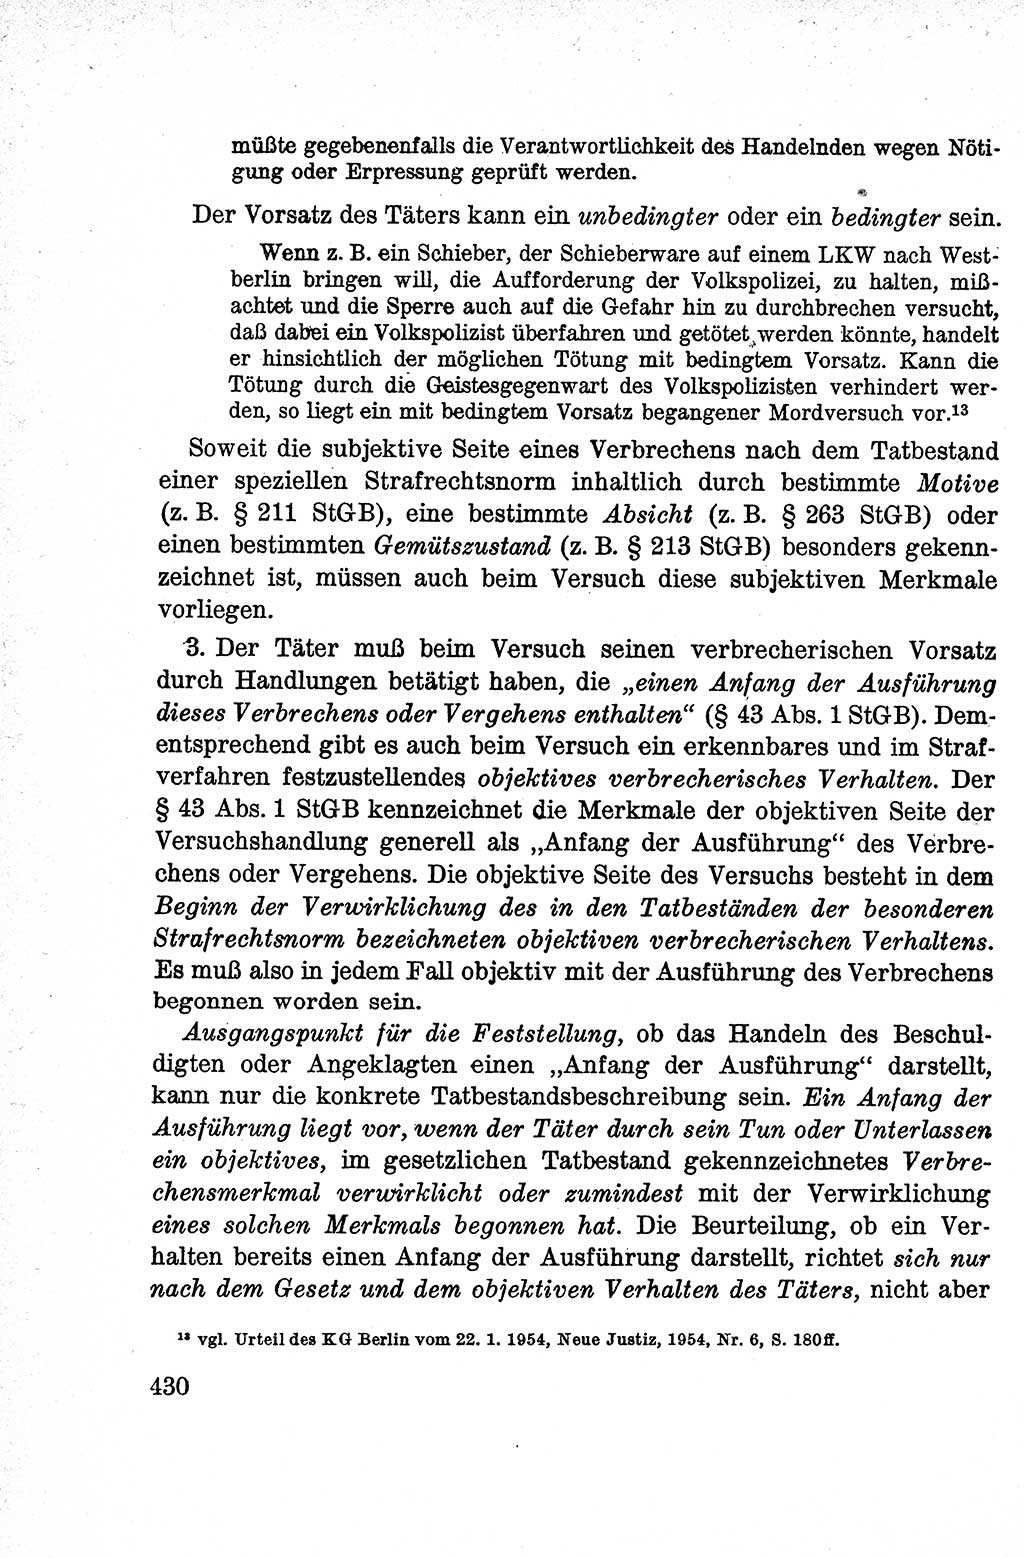 Lehrbuch des Strafrechts der Deutschen Demokratischen Republik (DDR), Allgemeiner Teil 1959, Seite 430 (Lb. Strafr. DDR AT 1959, S. 430)